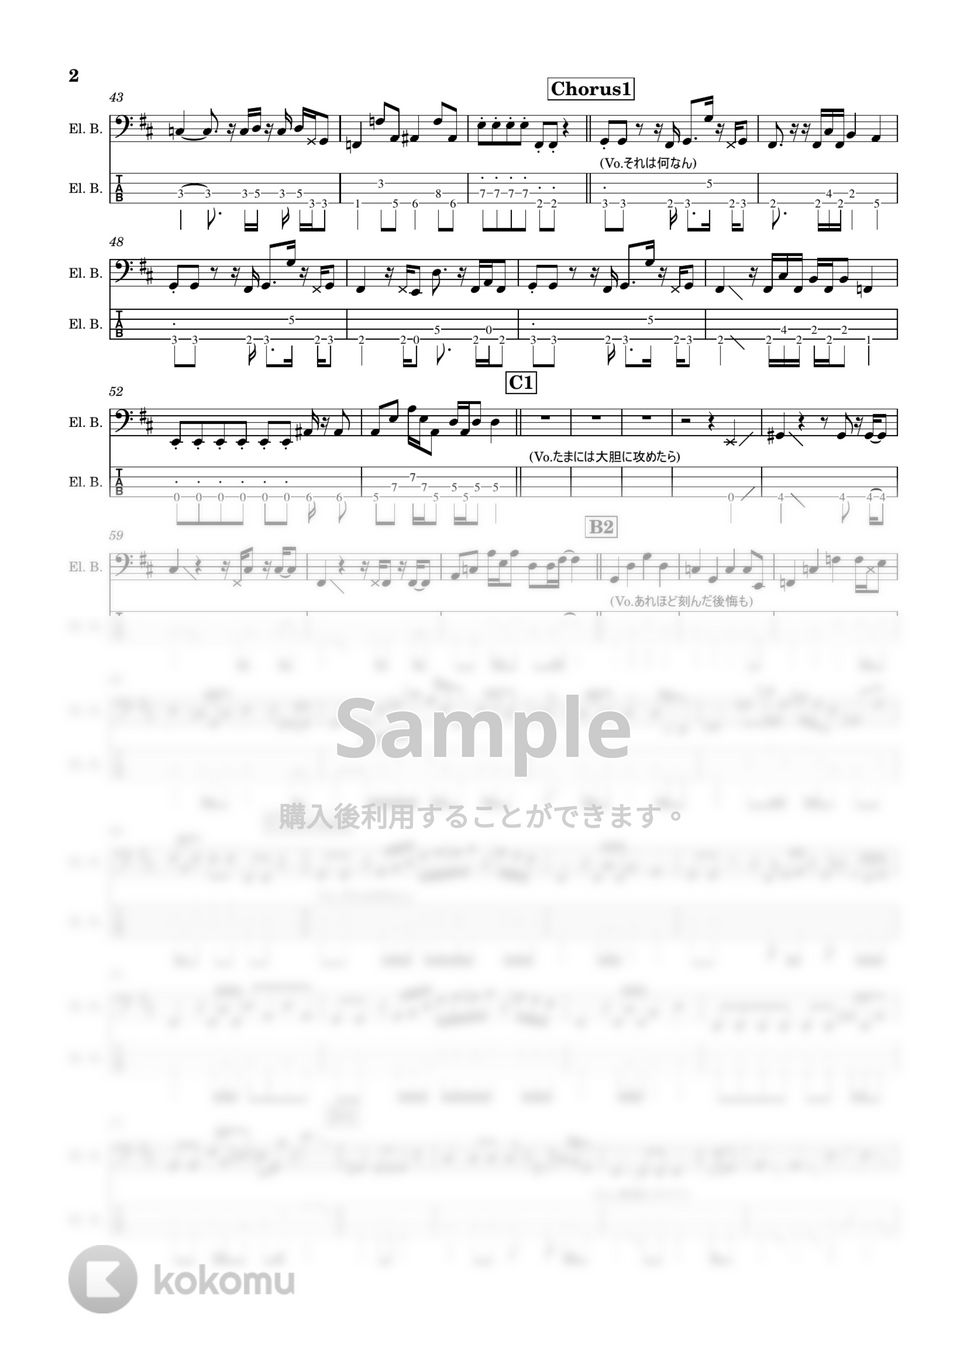 藤井風 - 何なんw(4弦) (Bass/TAB/藤井風) by TARUO's_BAss_Score